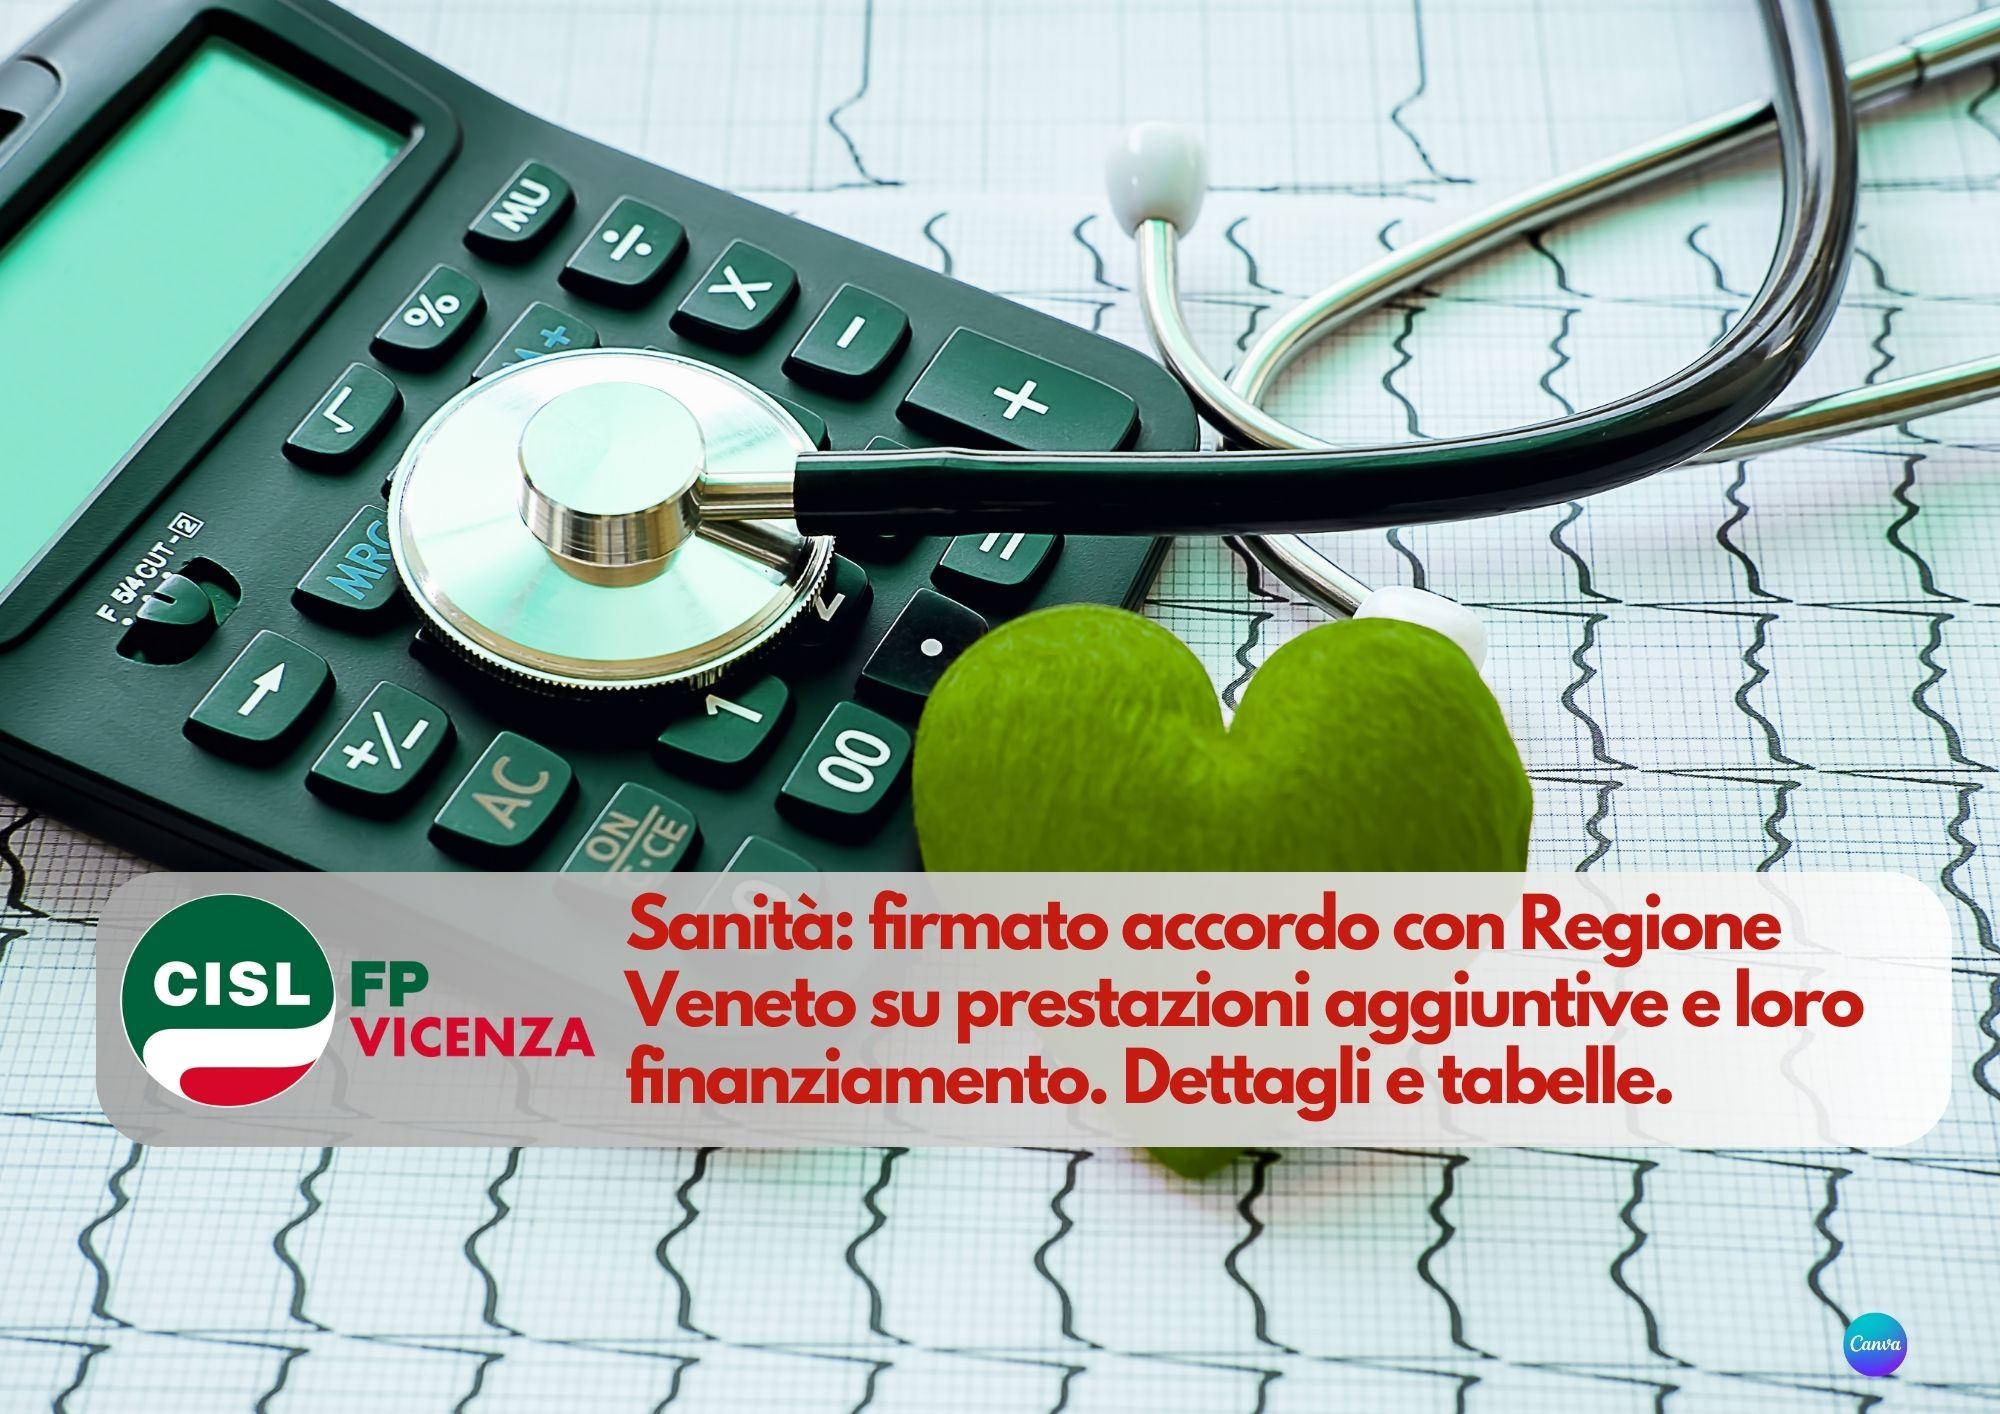 CISL FP Vicenza. Sanità: firmato accordo Regione Veneto prestazioni aggiuntive e loro finanziamento